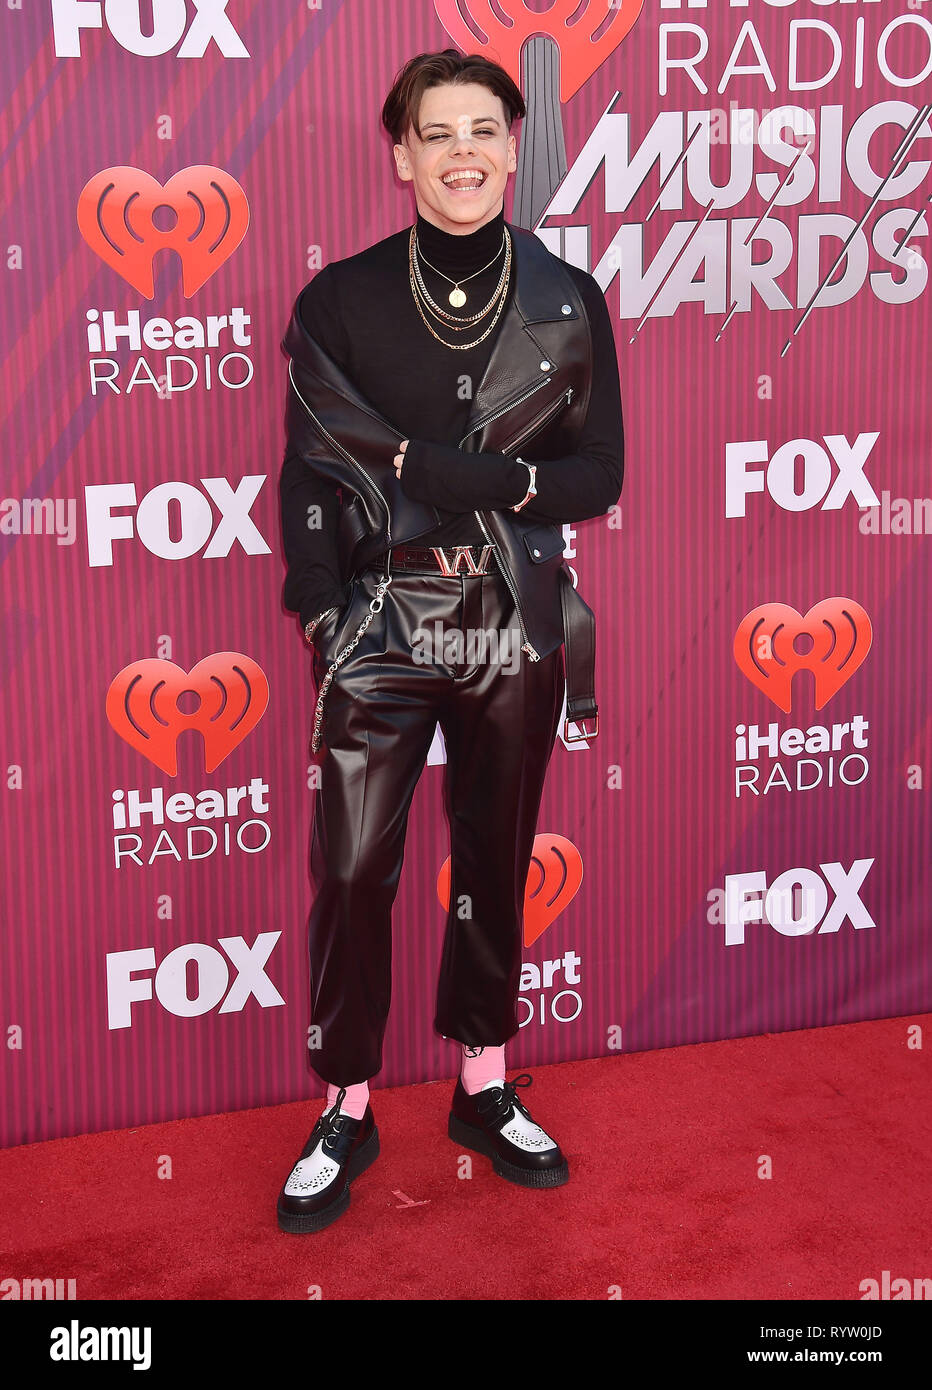 LOS ANGELES, CA - 14 Marzo: Yungblud assiste il 2019 iHeartRadio Music Awards che viene trasmesso in diretta su FOX al teatro di Microsoft su Marzo 14, 2019 a Los Angeles, California. Foto Stock